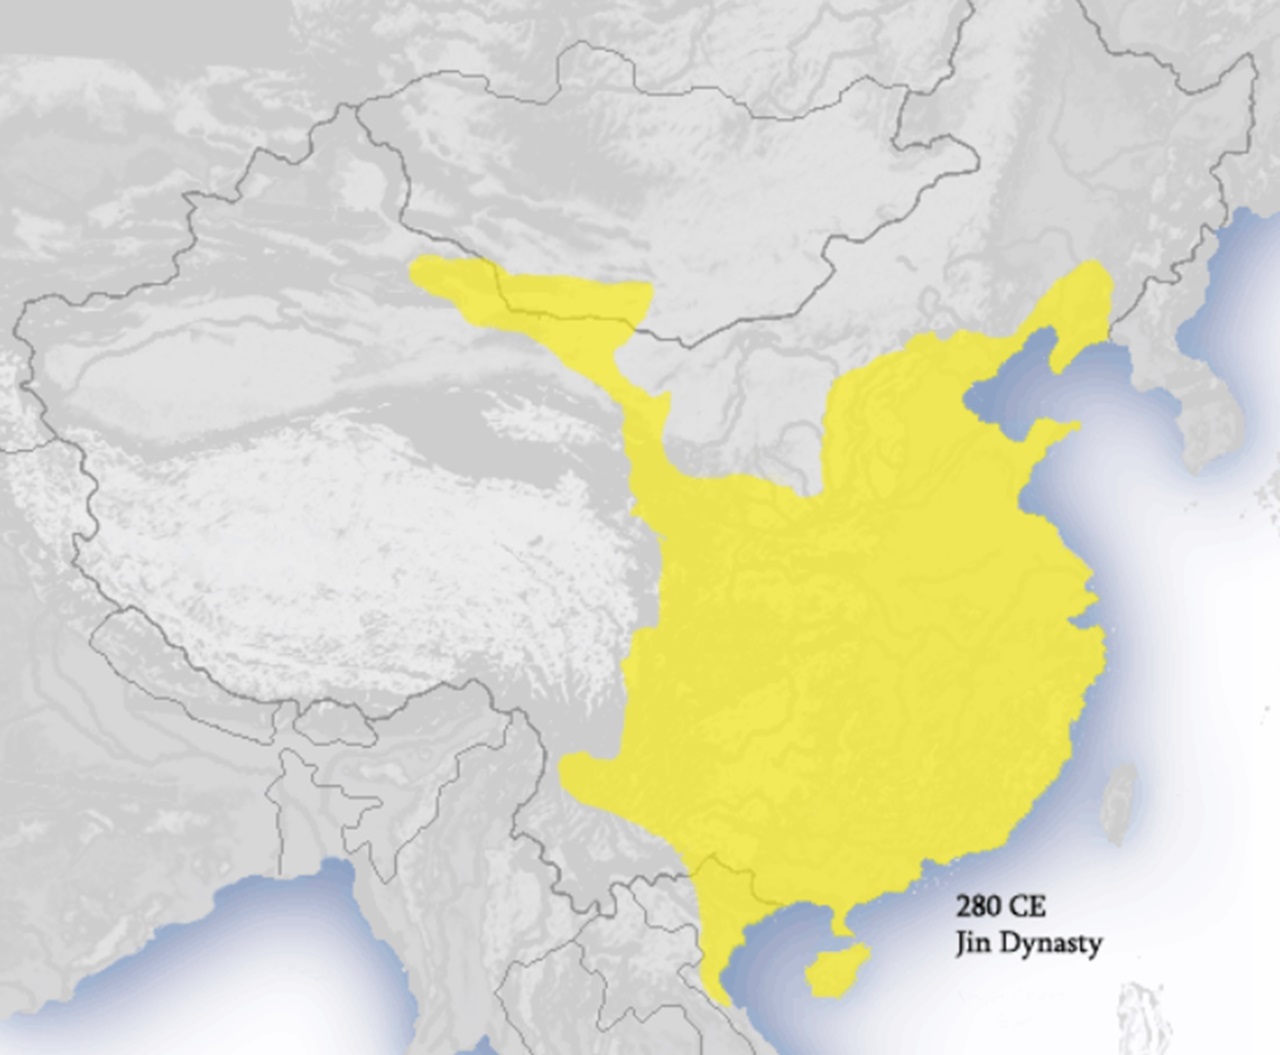 tomba imperiale estensione massima Dinastia Jin